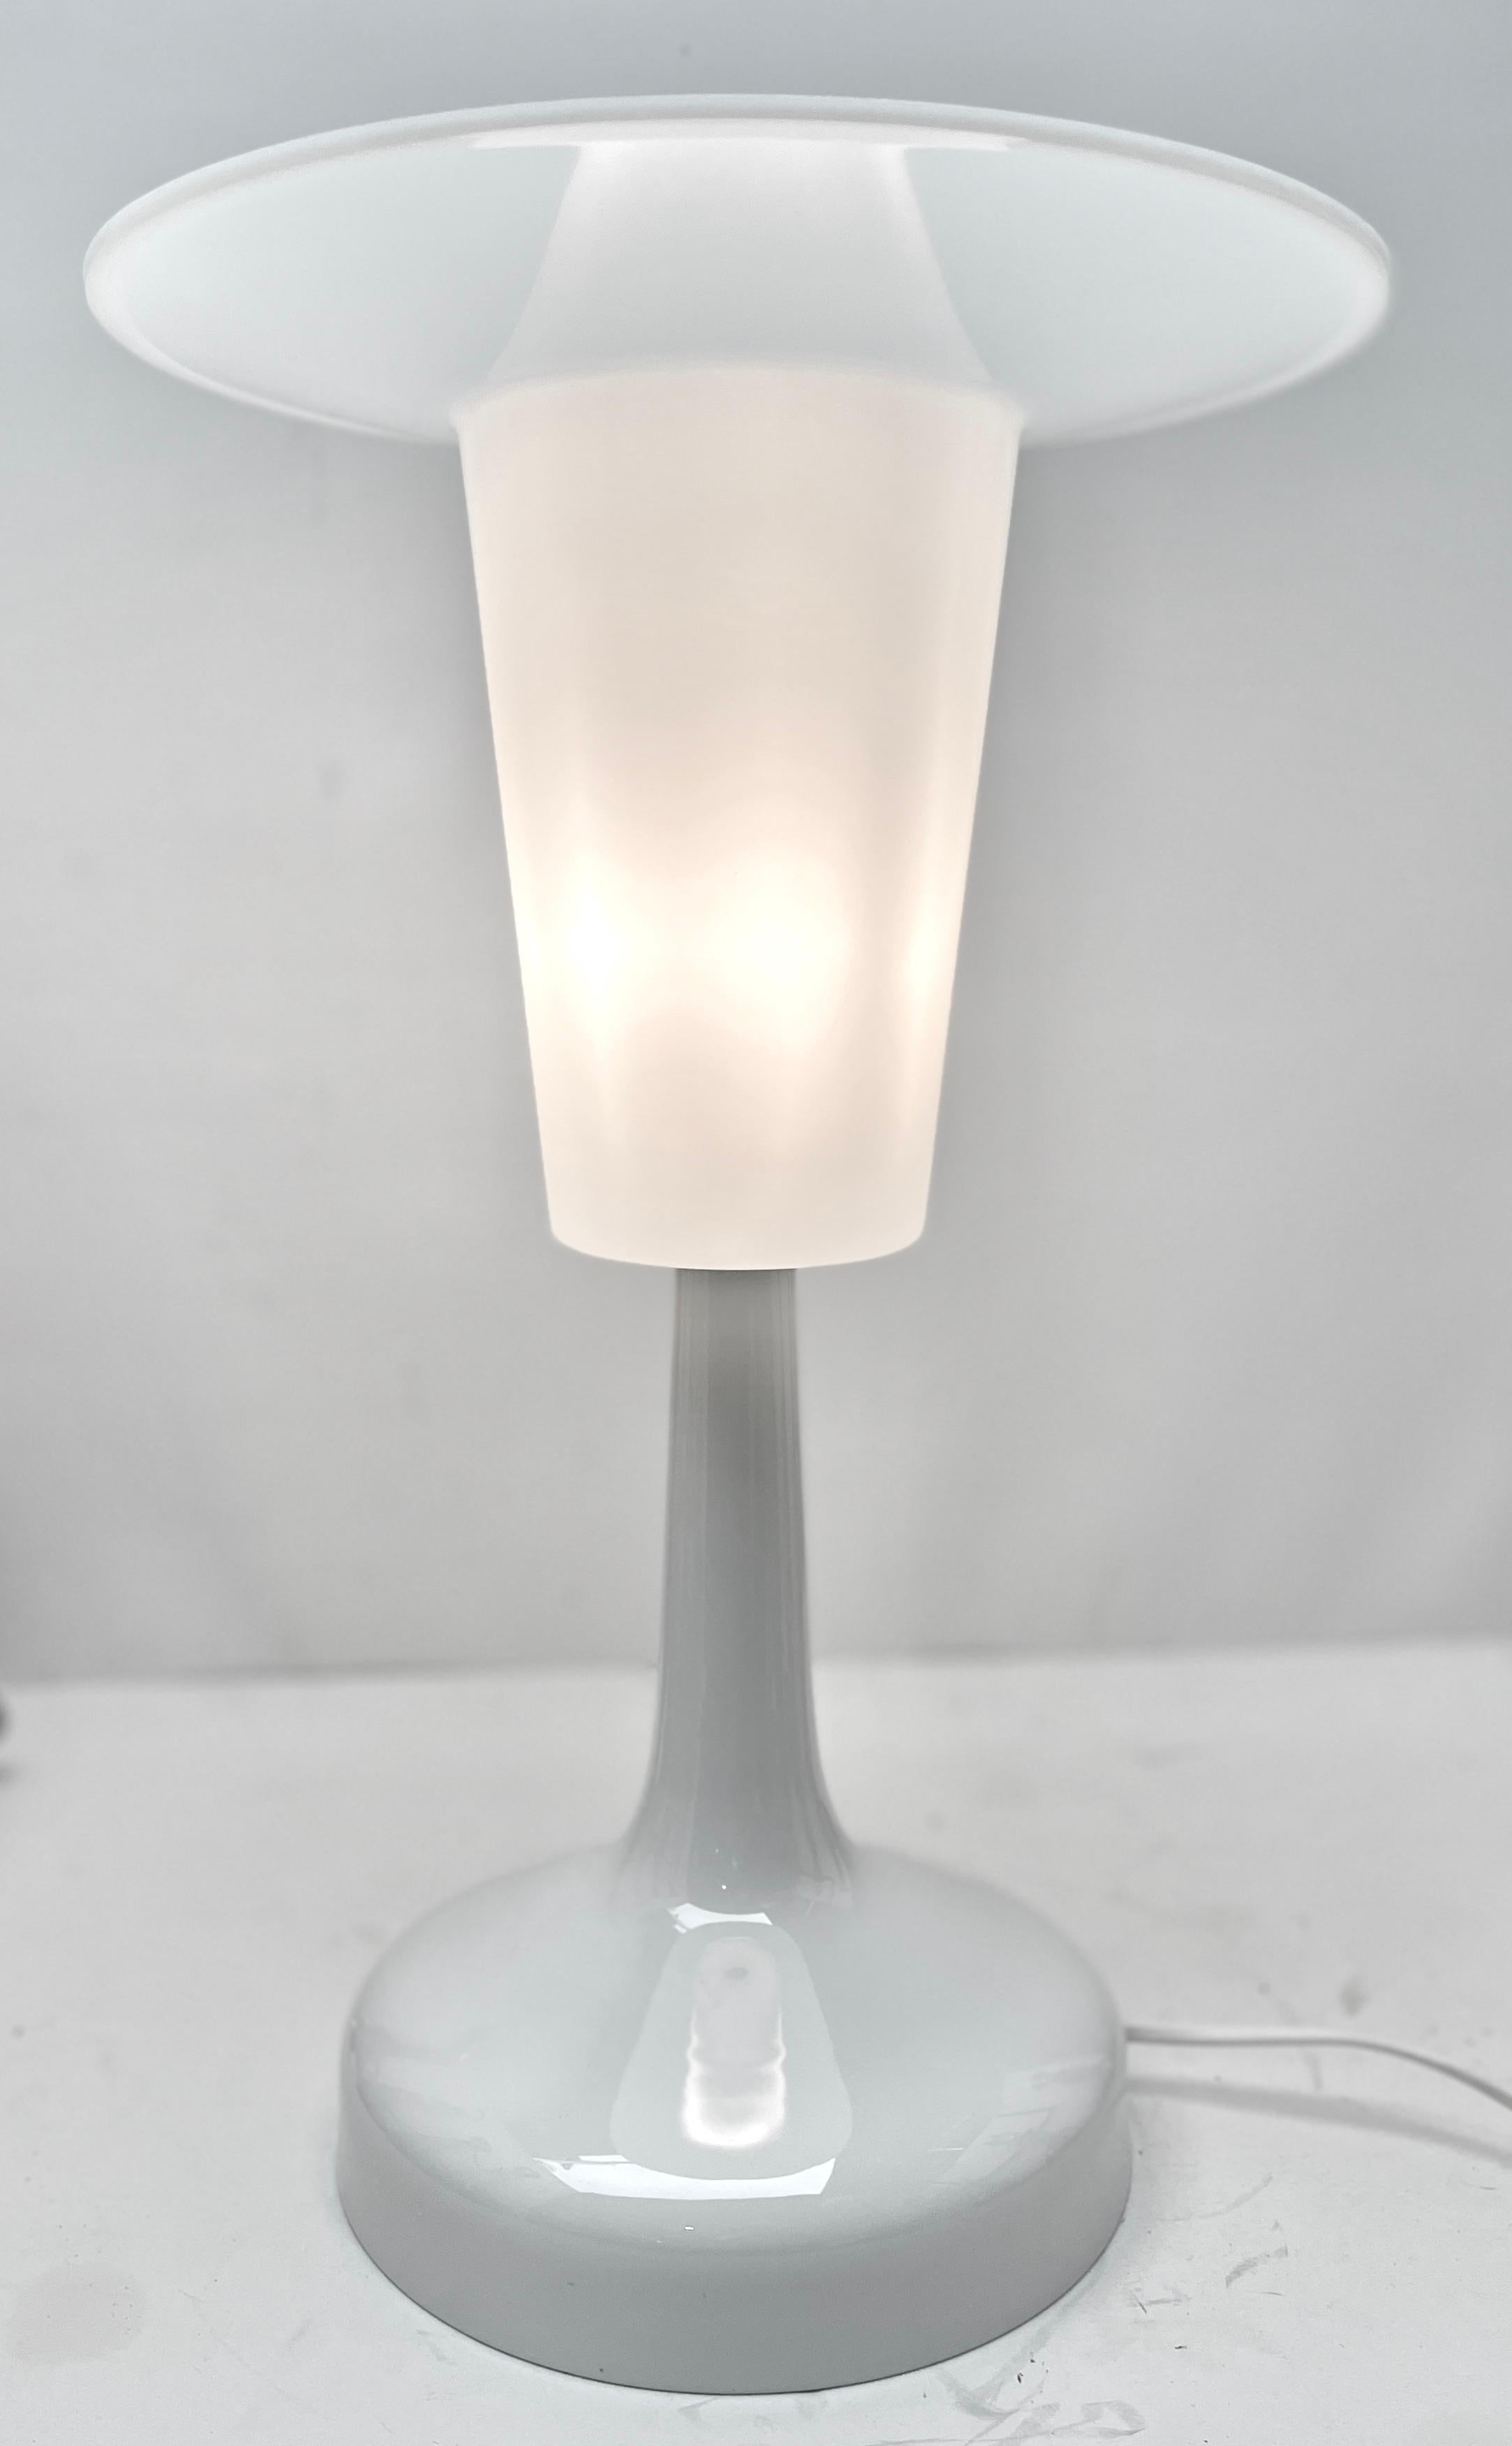 Design compact classique de Rosenthal, cette lampe de bureau à projecteur a été produite par Rosenthal.

Le pied est en porcelaine blanche. La lampe est entièrement d'origine et en bon état.
et n'a pas été restauré.
En parfait état de marche, elle